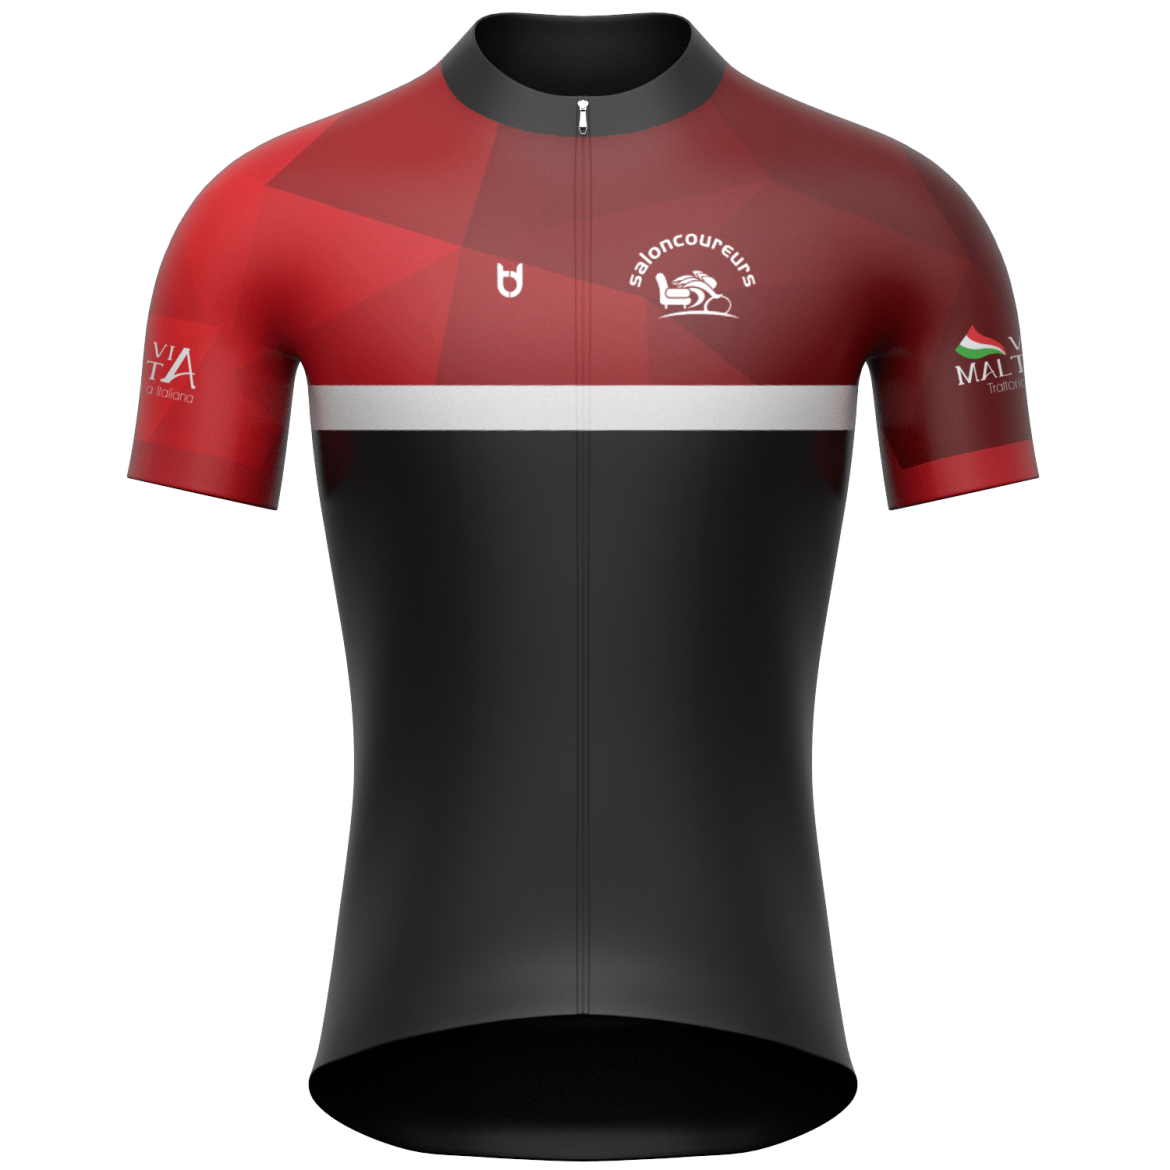 TD sportswear custom cycling jersey